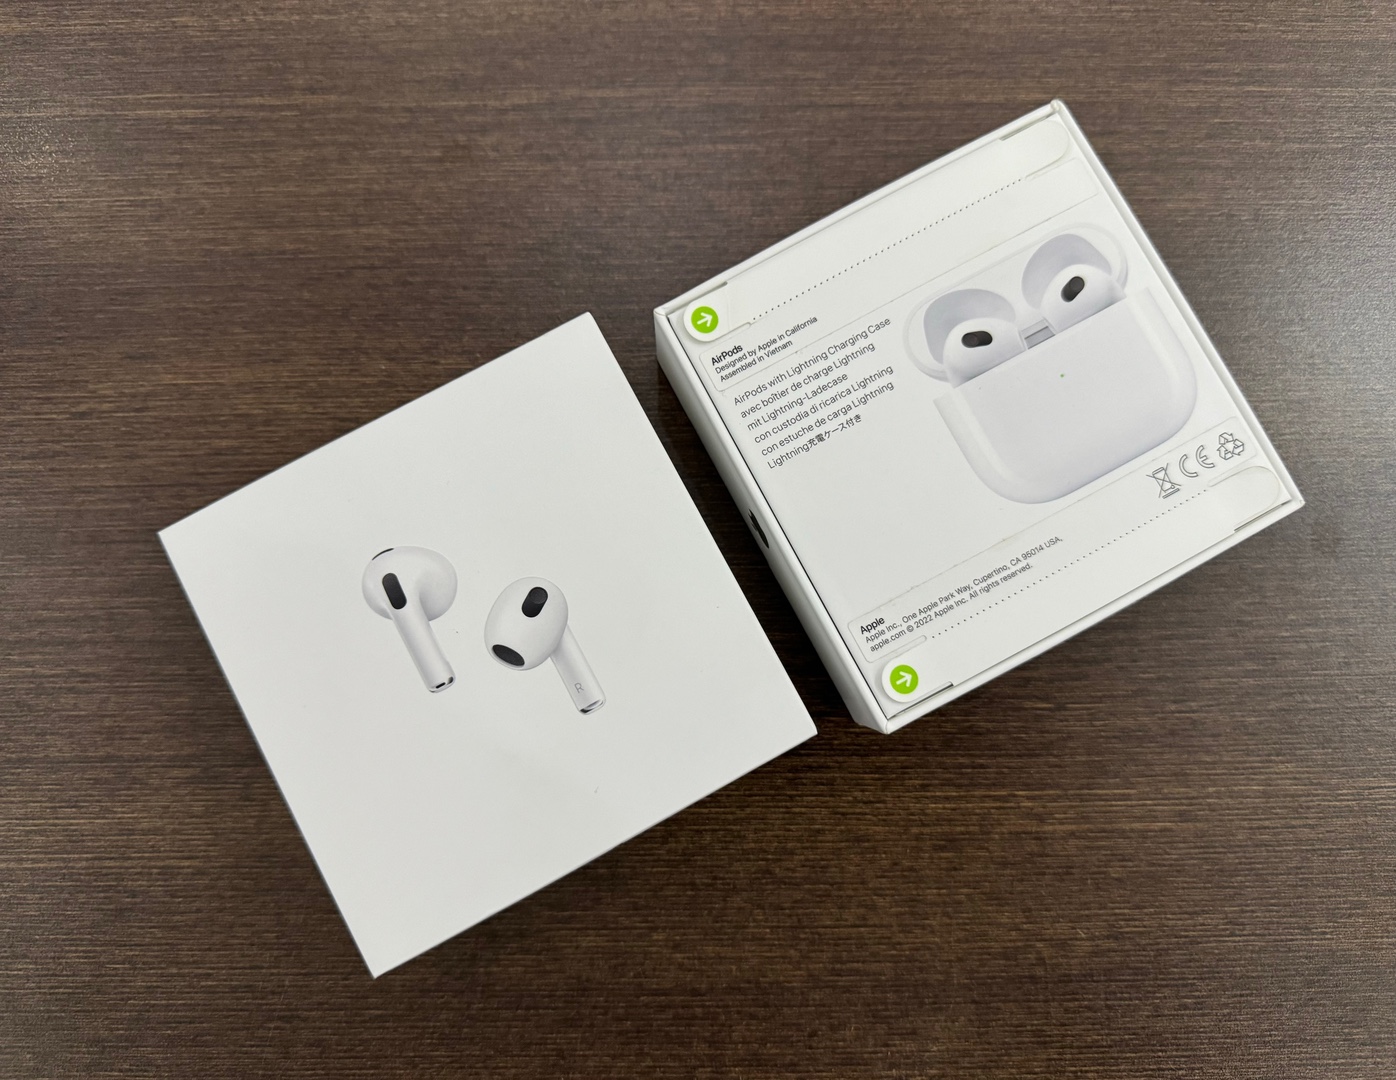 camaras y audio - Airpods Series 3 Nuevo Sellado by Apple, Originales RD$ 9.750 NEG| Física. 0